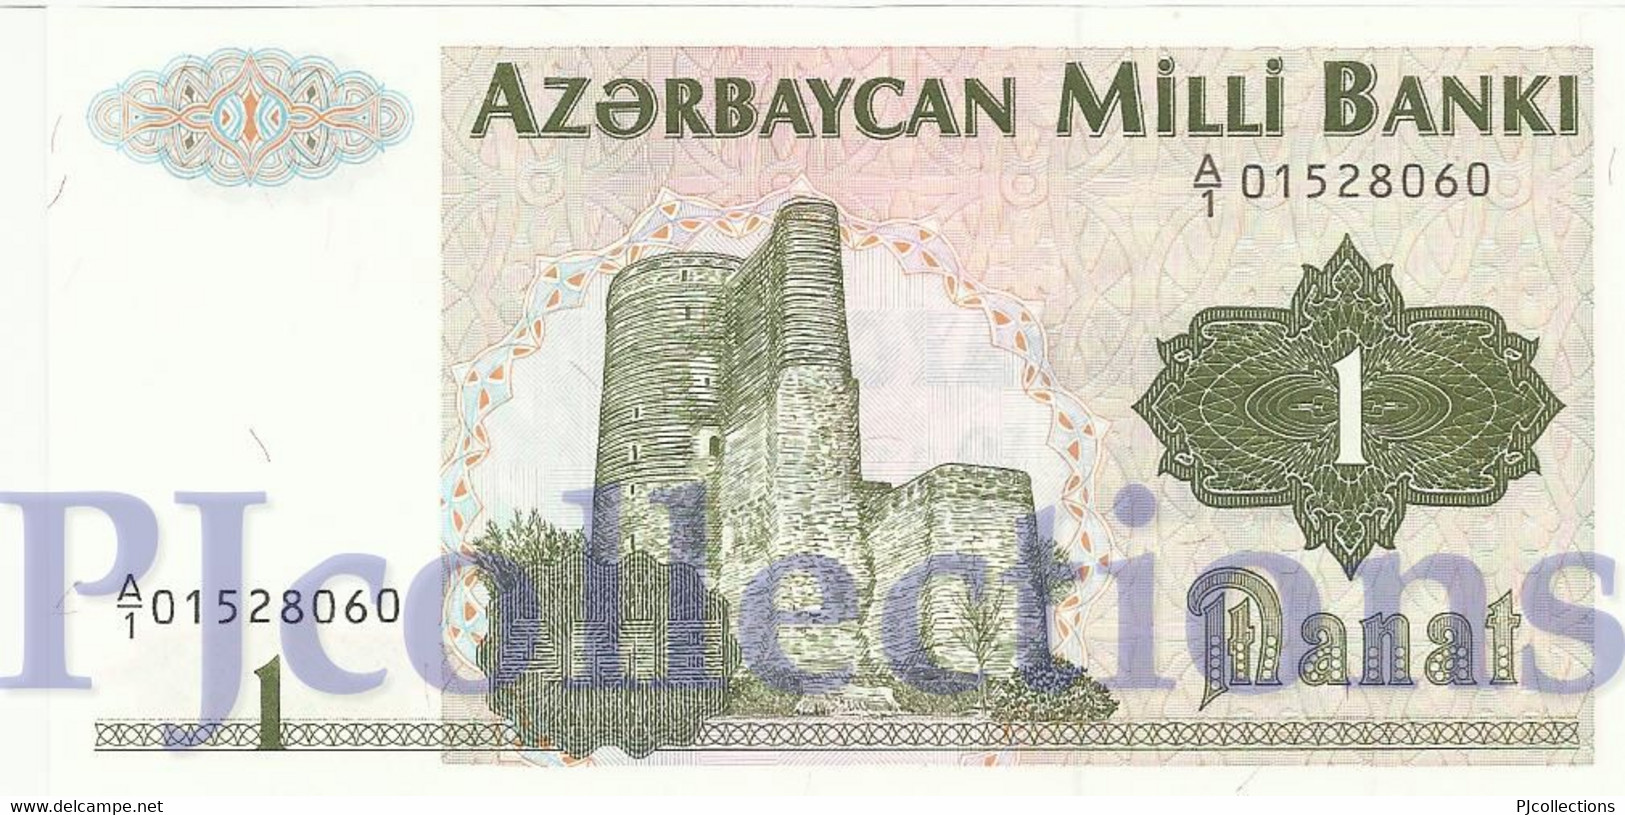 AZERBAIJAN 1 MANAT 1992 PICK 11 UNC - Azerbaïdjan